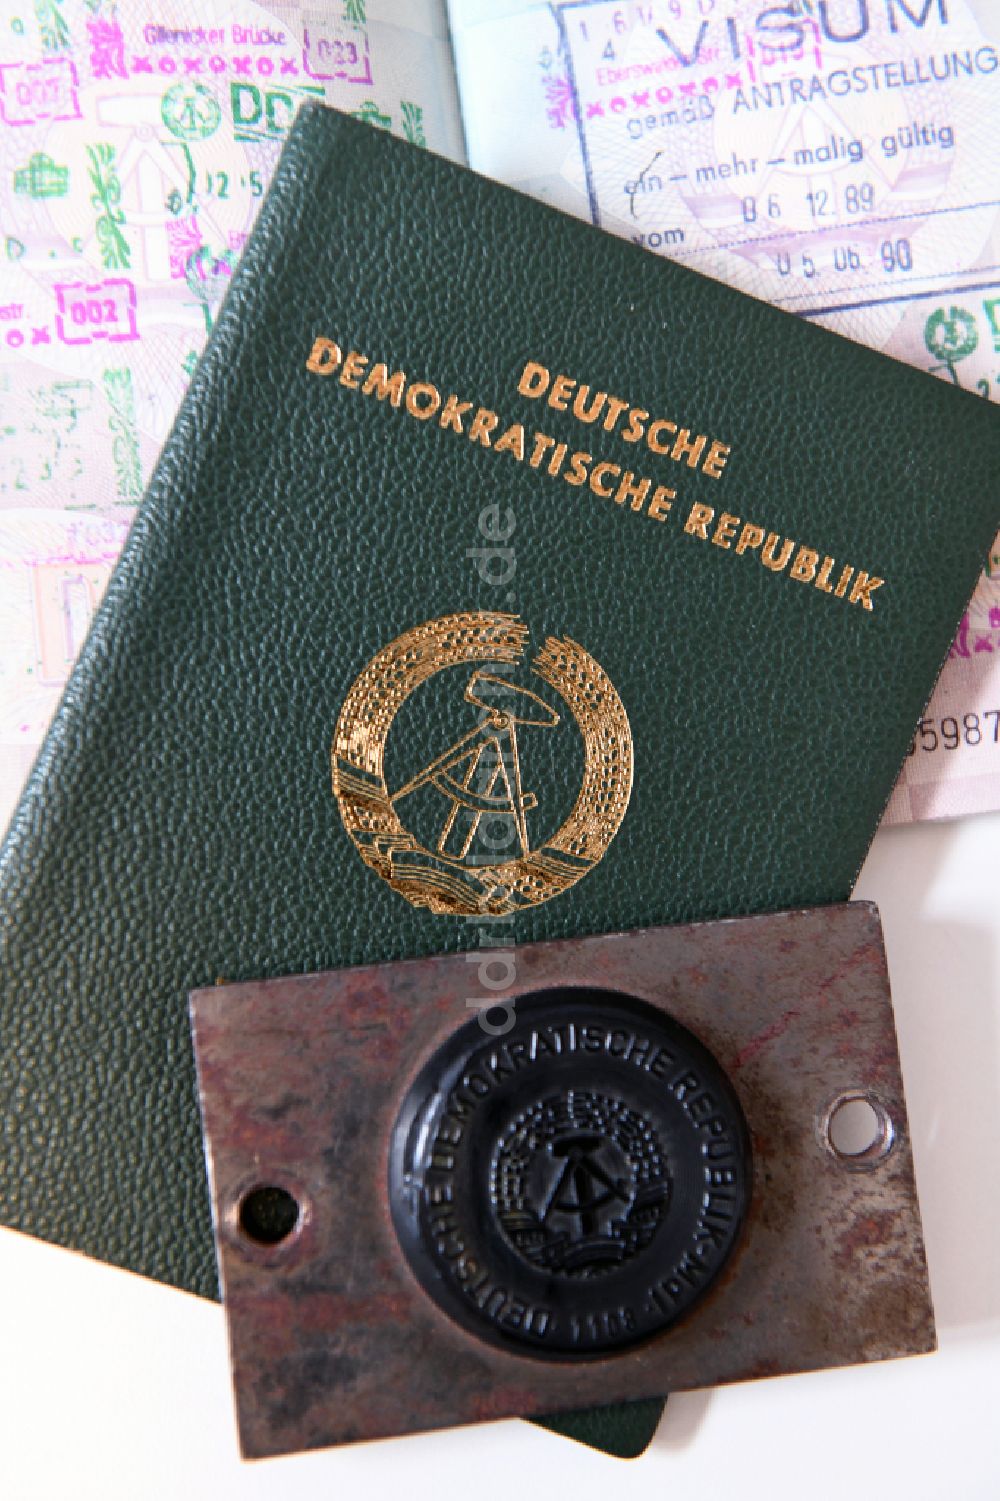 Berlin: Reisepass und Siegel aus der DDR